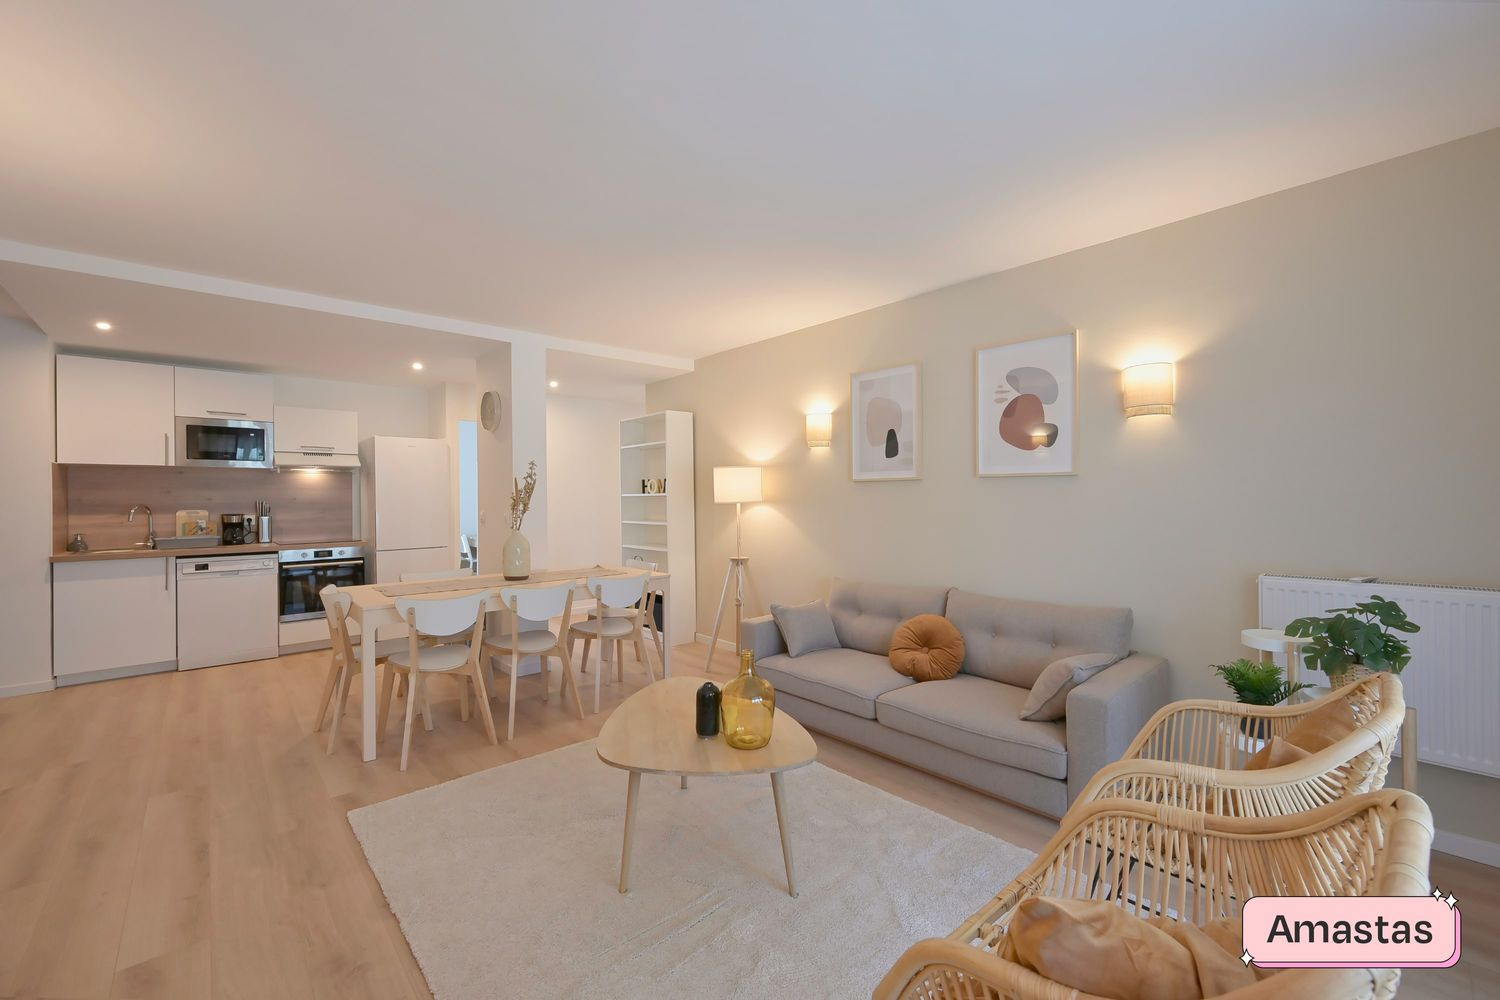 
                                                Colocation
                                                 Deux chambres disponibles dans cette colocation de 4 chambres dans un appartement rénové à Valence - 426502